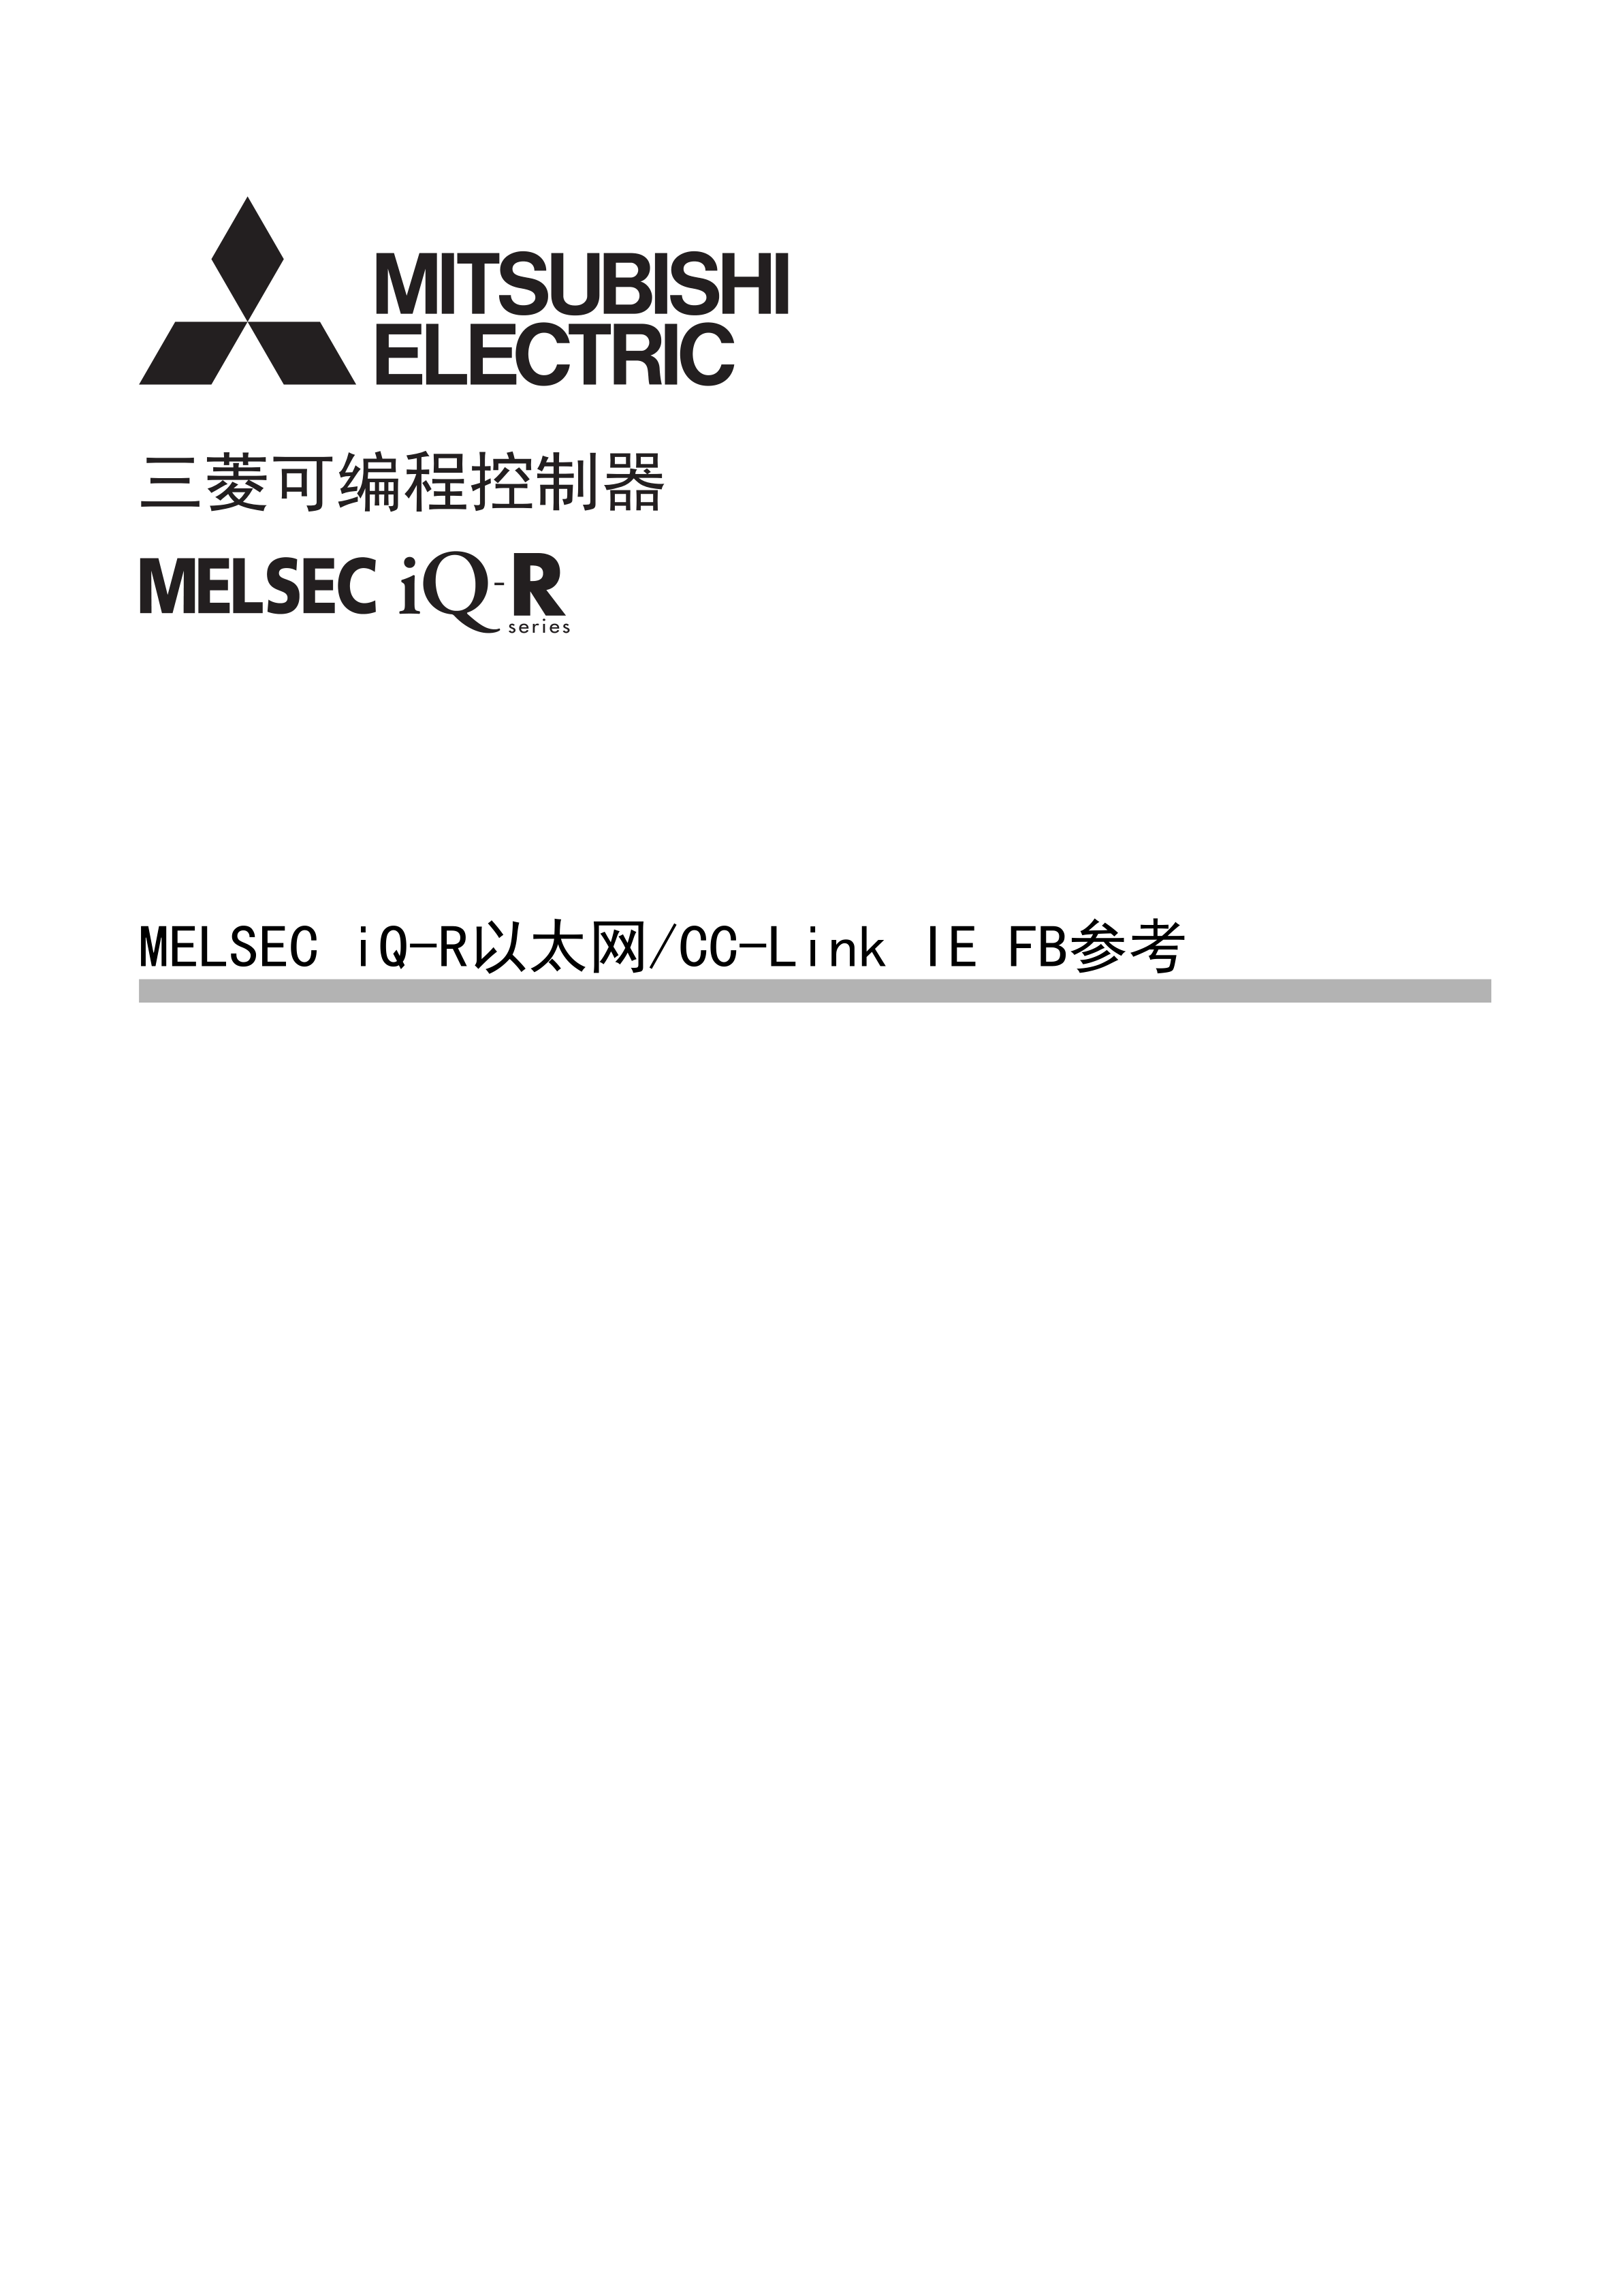 三菱RJ72GF15-T2用户手册IE现场网络远程起始模块手册_广州菱控